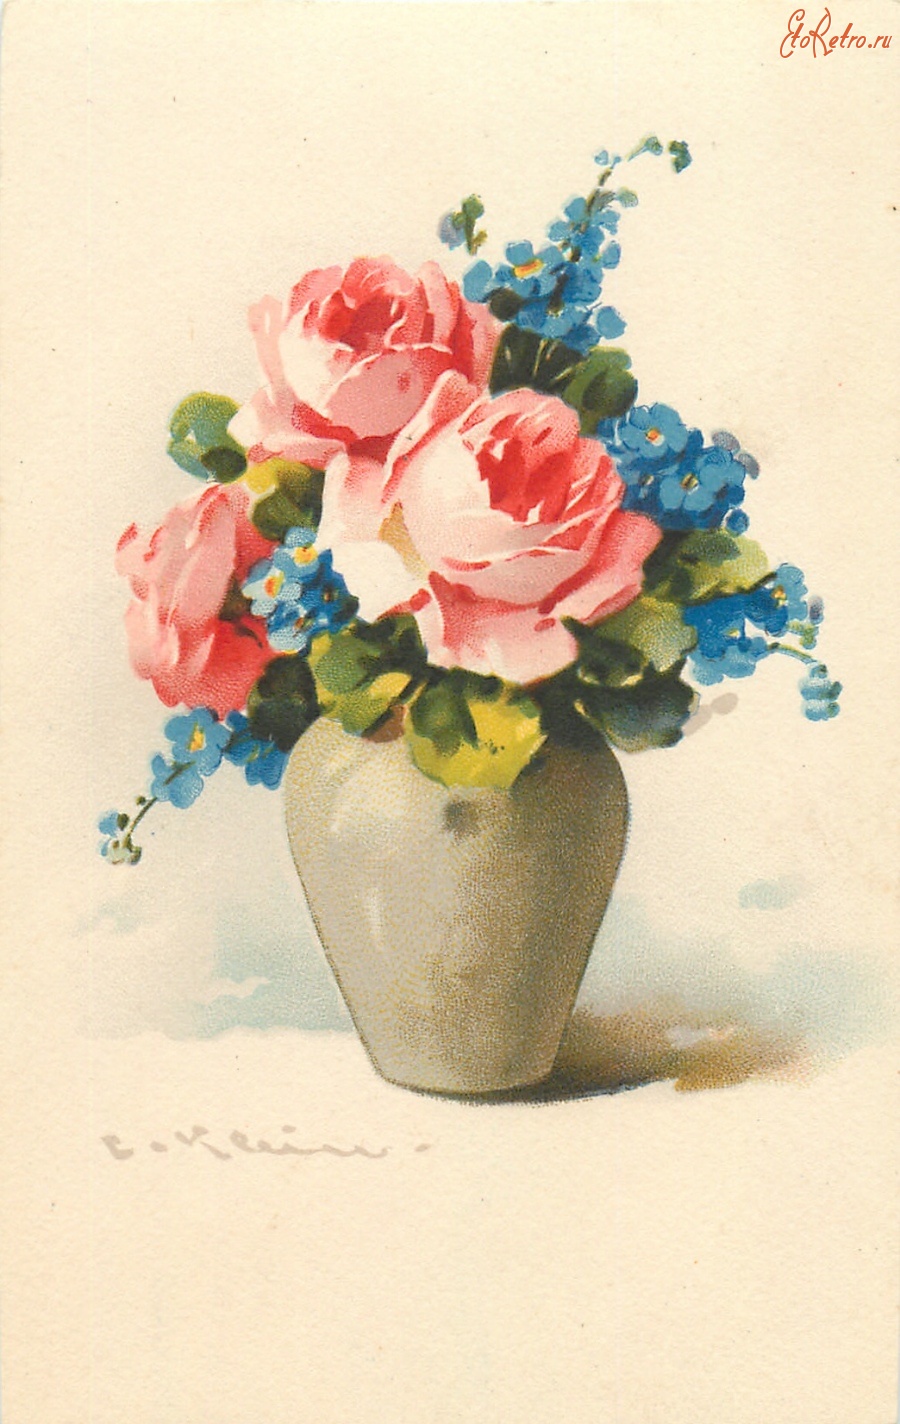 Ретро открытки - Три розы и голубые незабудки в серо-зелёной вазе